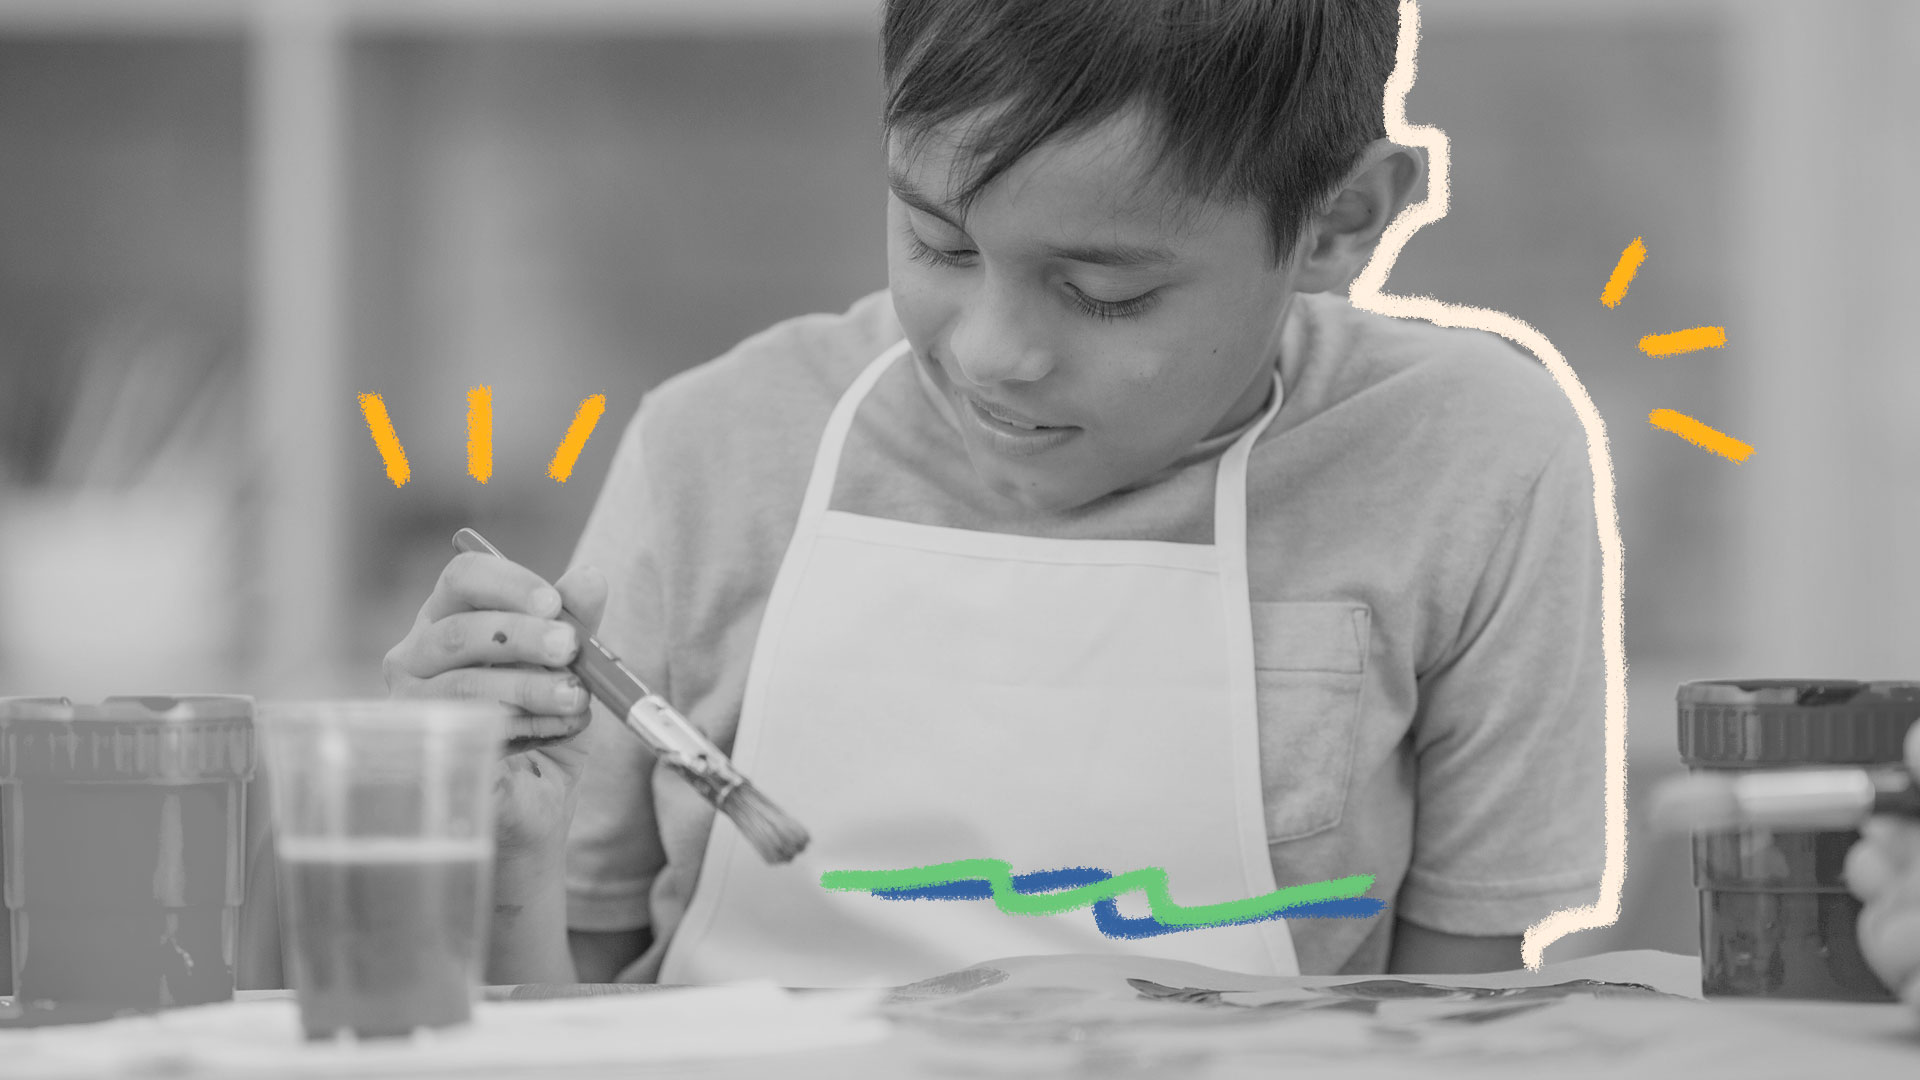 Um menino que aparenta 7 anos de idade, está com um pincel na mão, desenhando em um papel